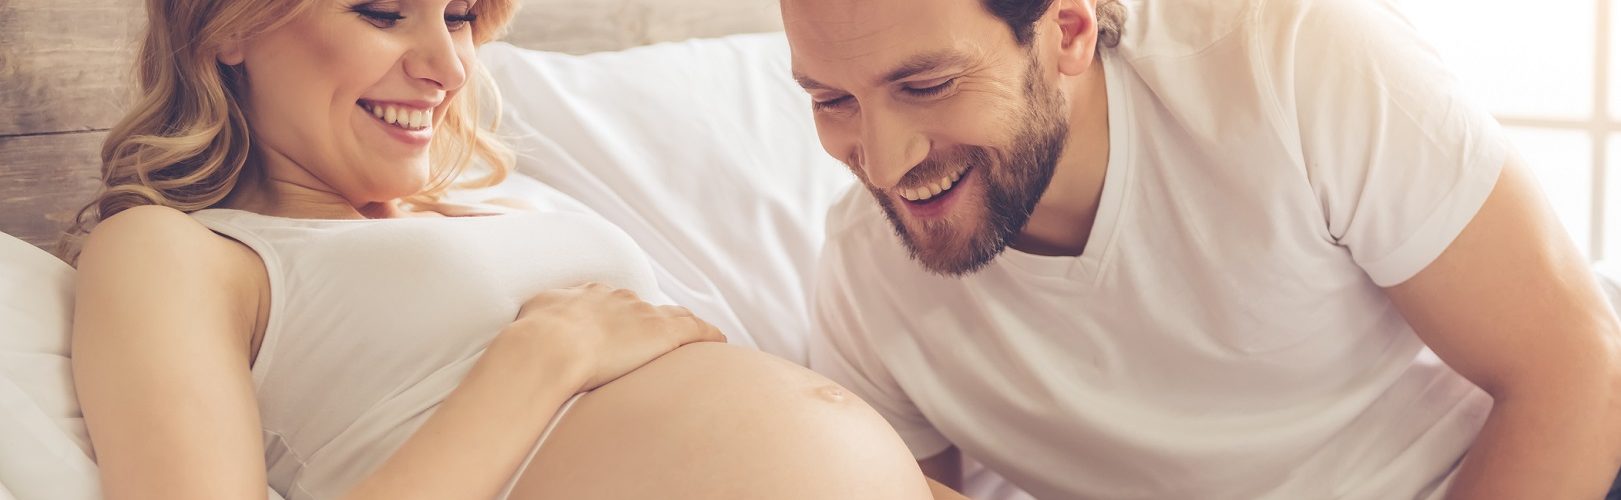 Schnell schwanger werden: 10 Tipps helfen dabei